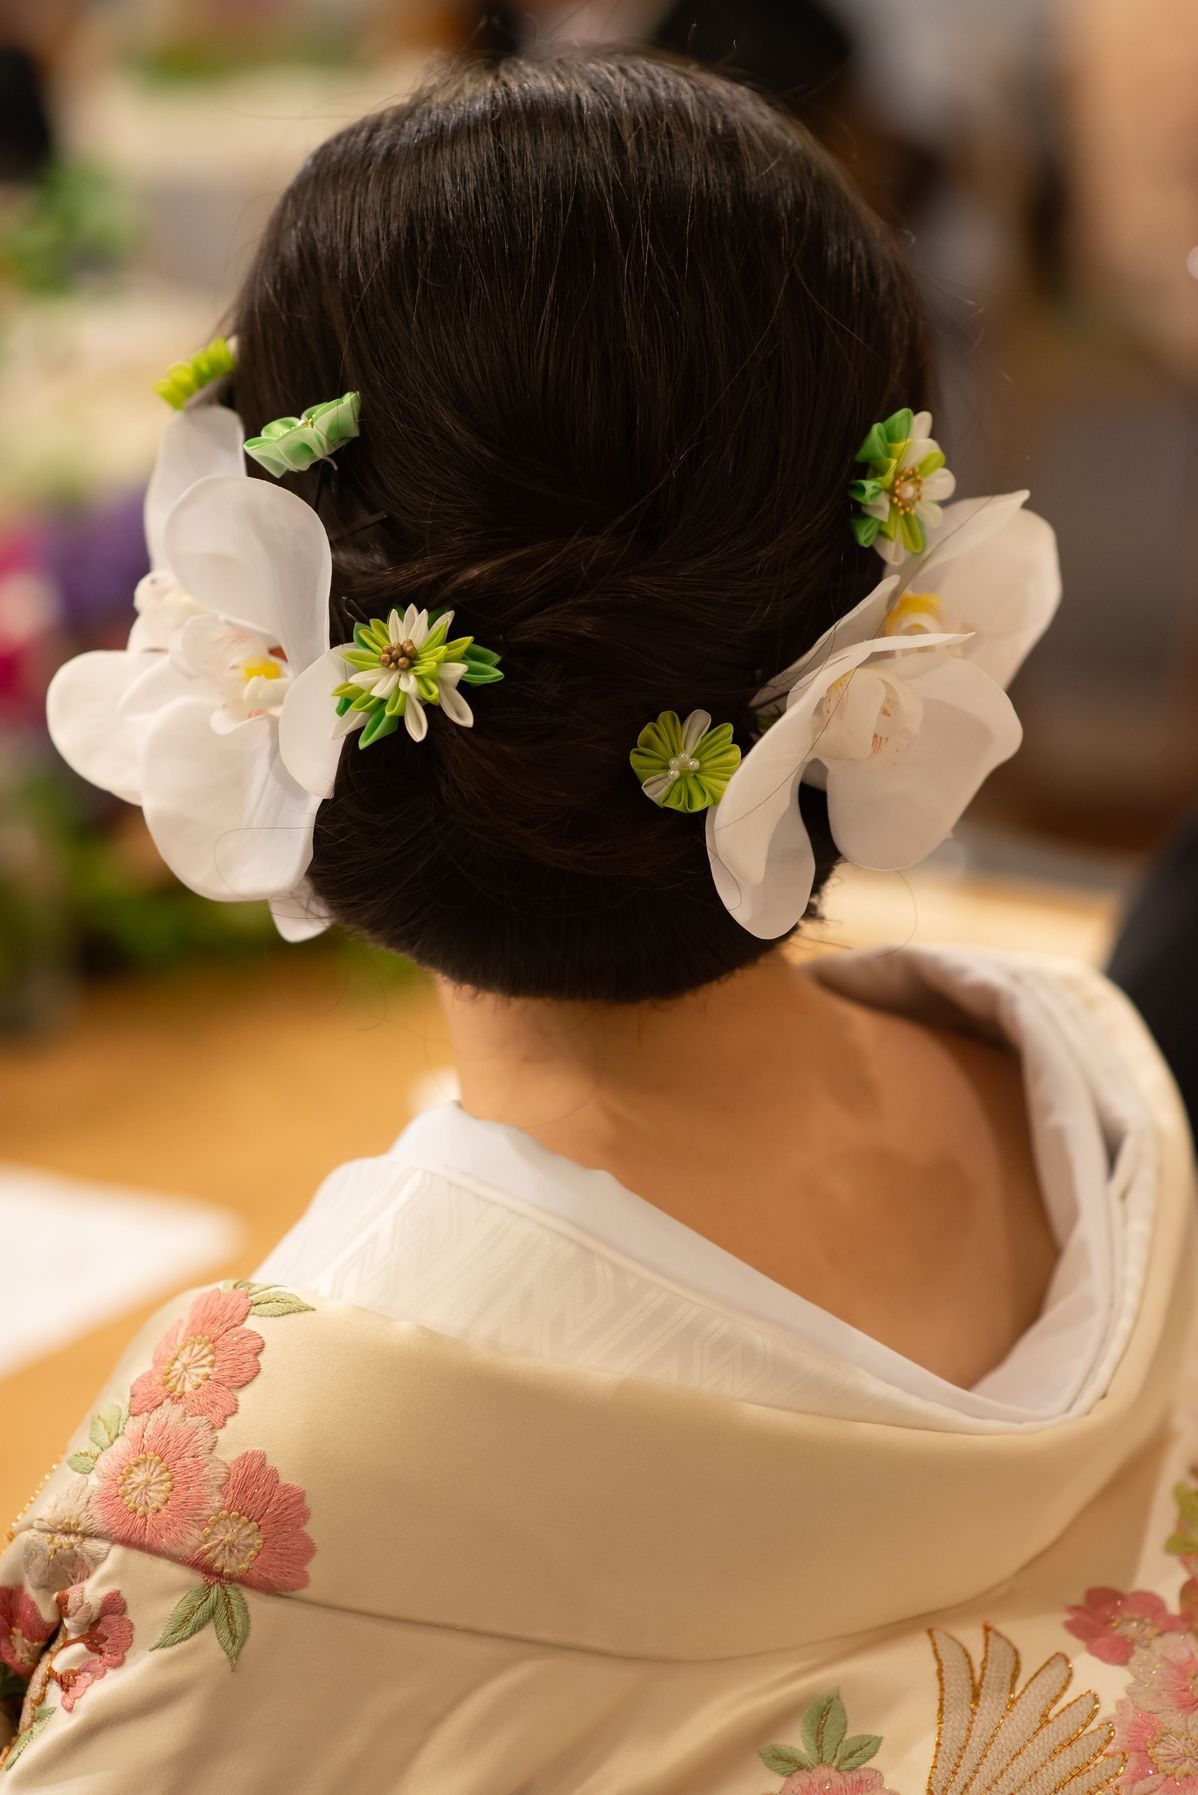 和装用の髪飾りを手作りしちゃおう 100均アイテムで叶える花嫁diy 結婚式準備はウェディングニュース